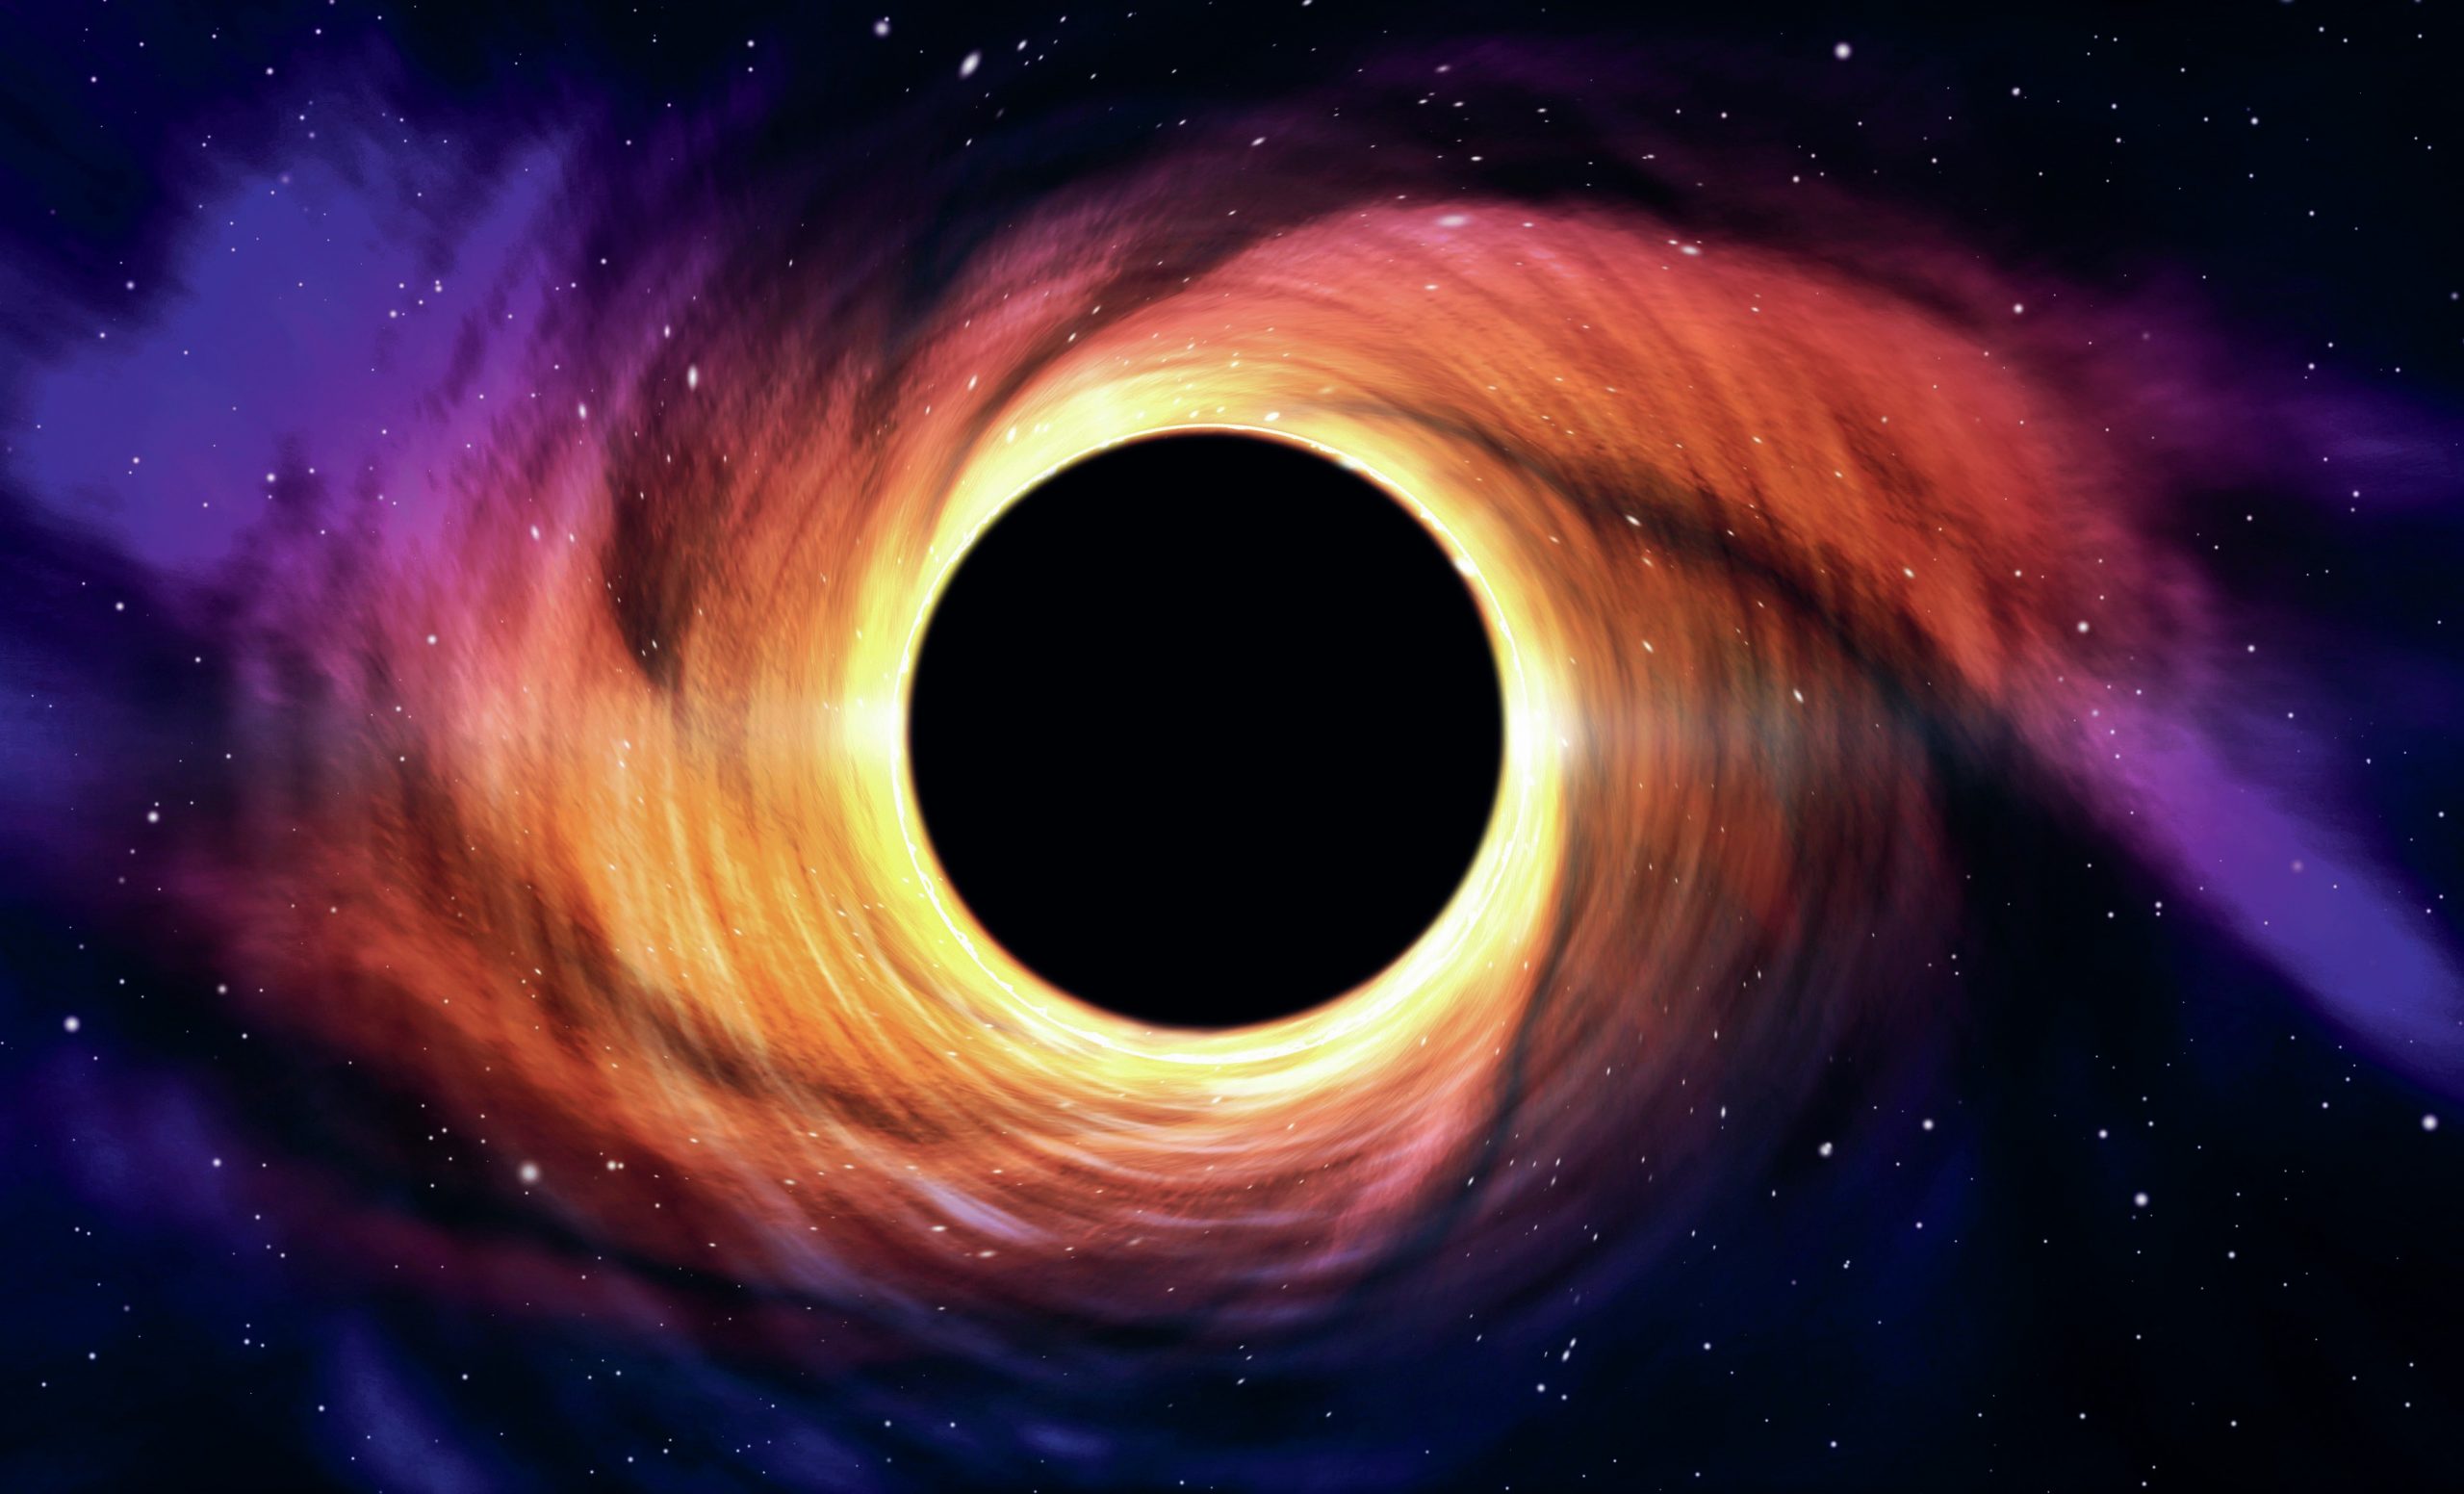 Imaging a black hole - Hodder Education Magazines